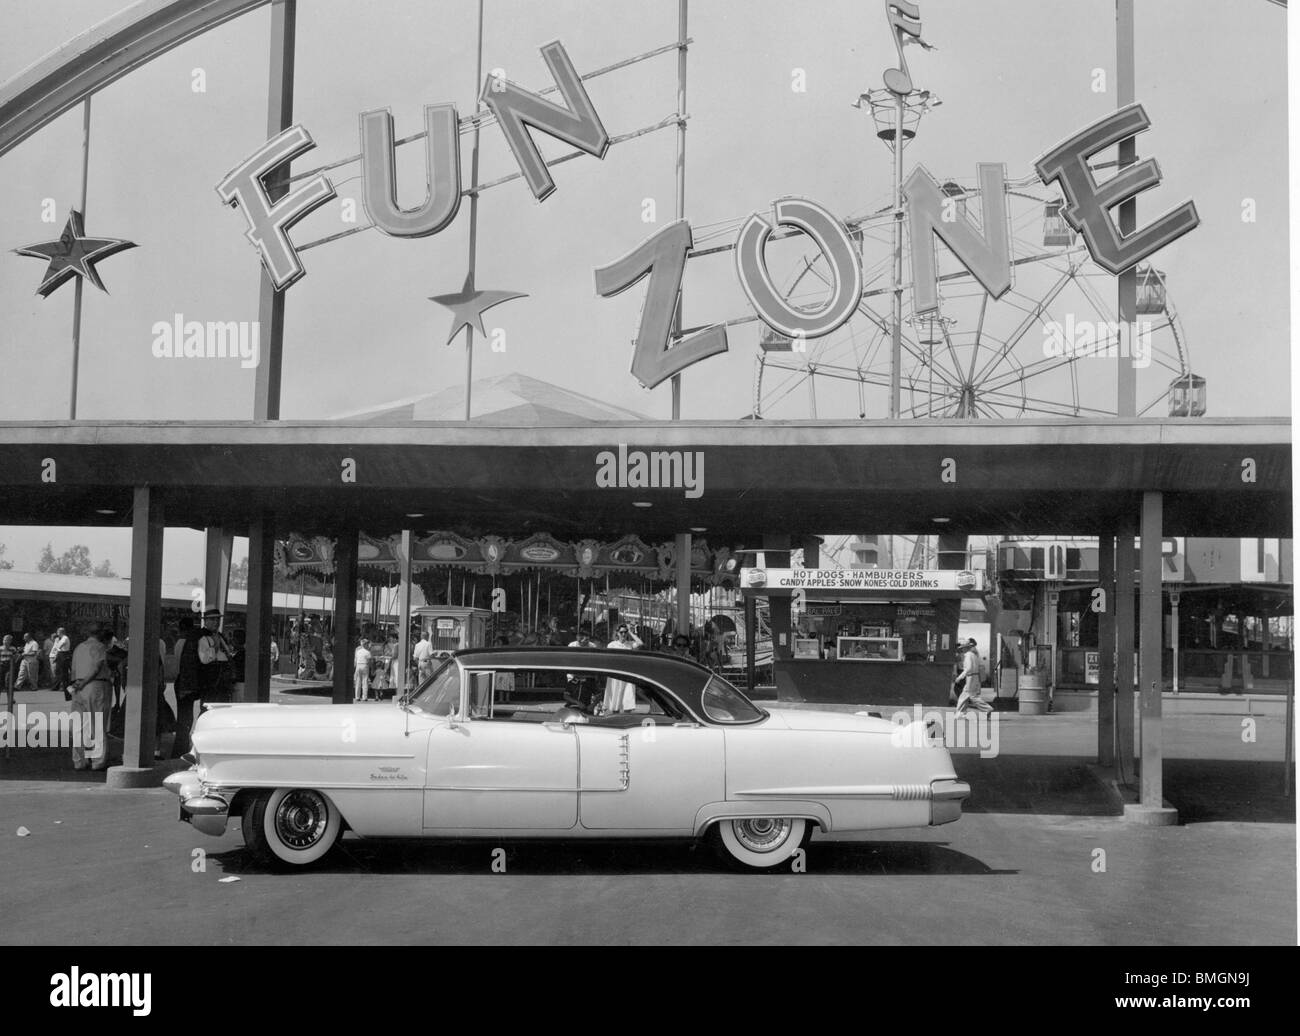 1956 Cadillac Sedan de Ville en Californie Banque D'Images